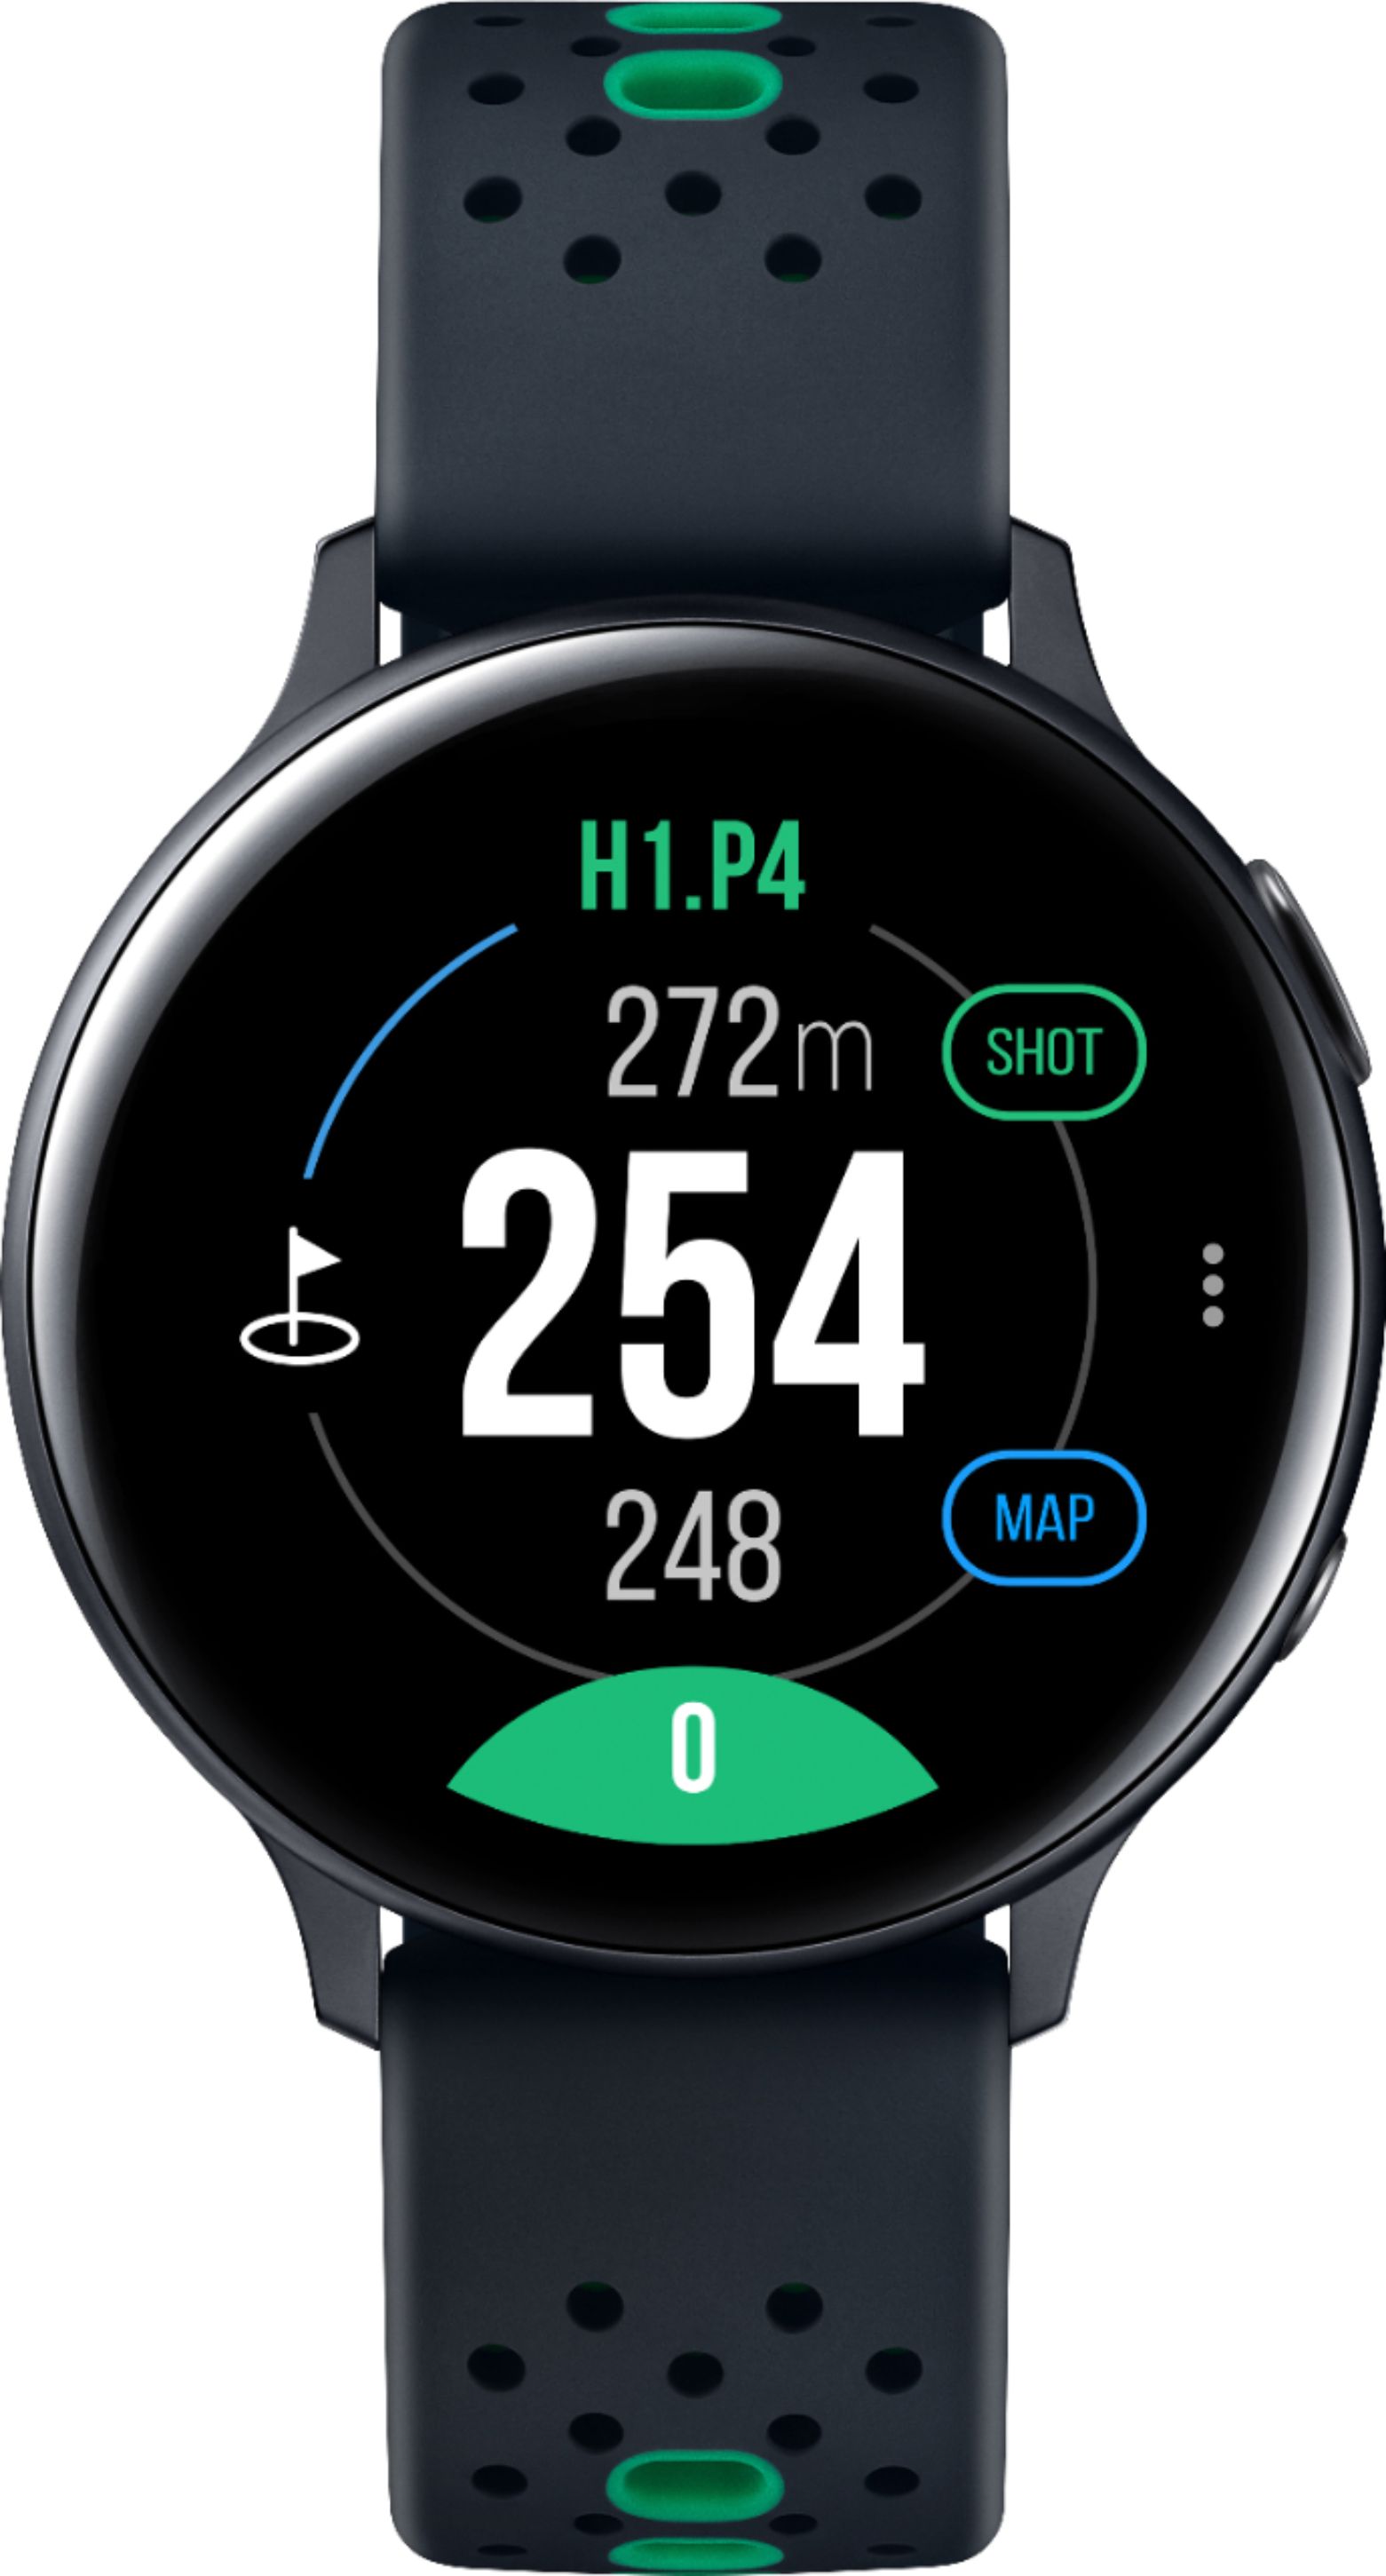 Samsung Galaxy Watch Active2 Golf Edition 44mm Bt Sm R0nzkggfu Best Buy